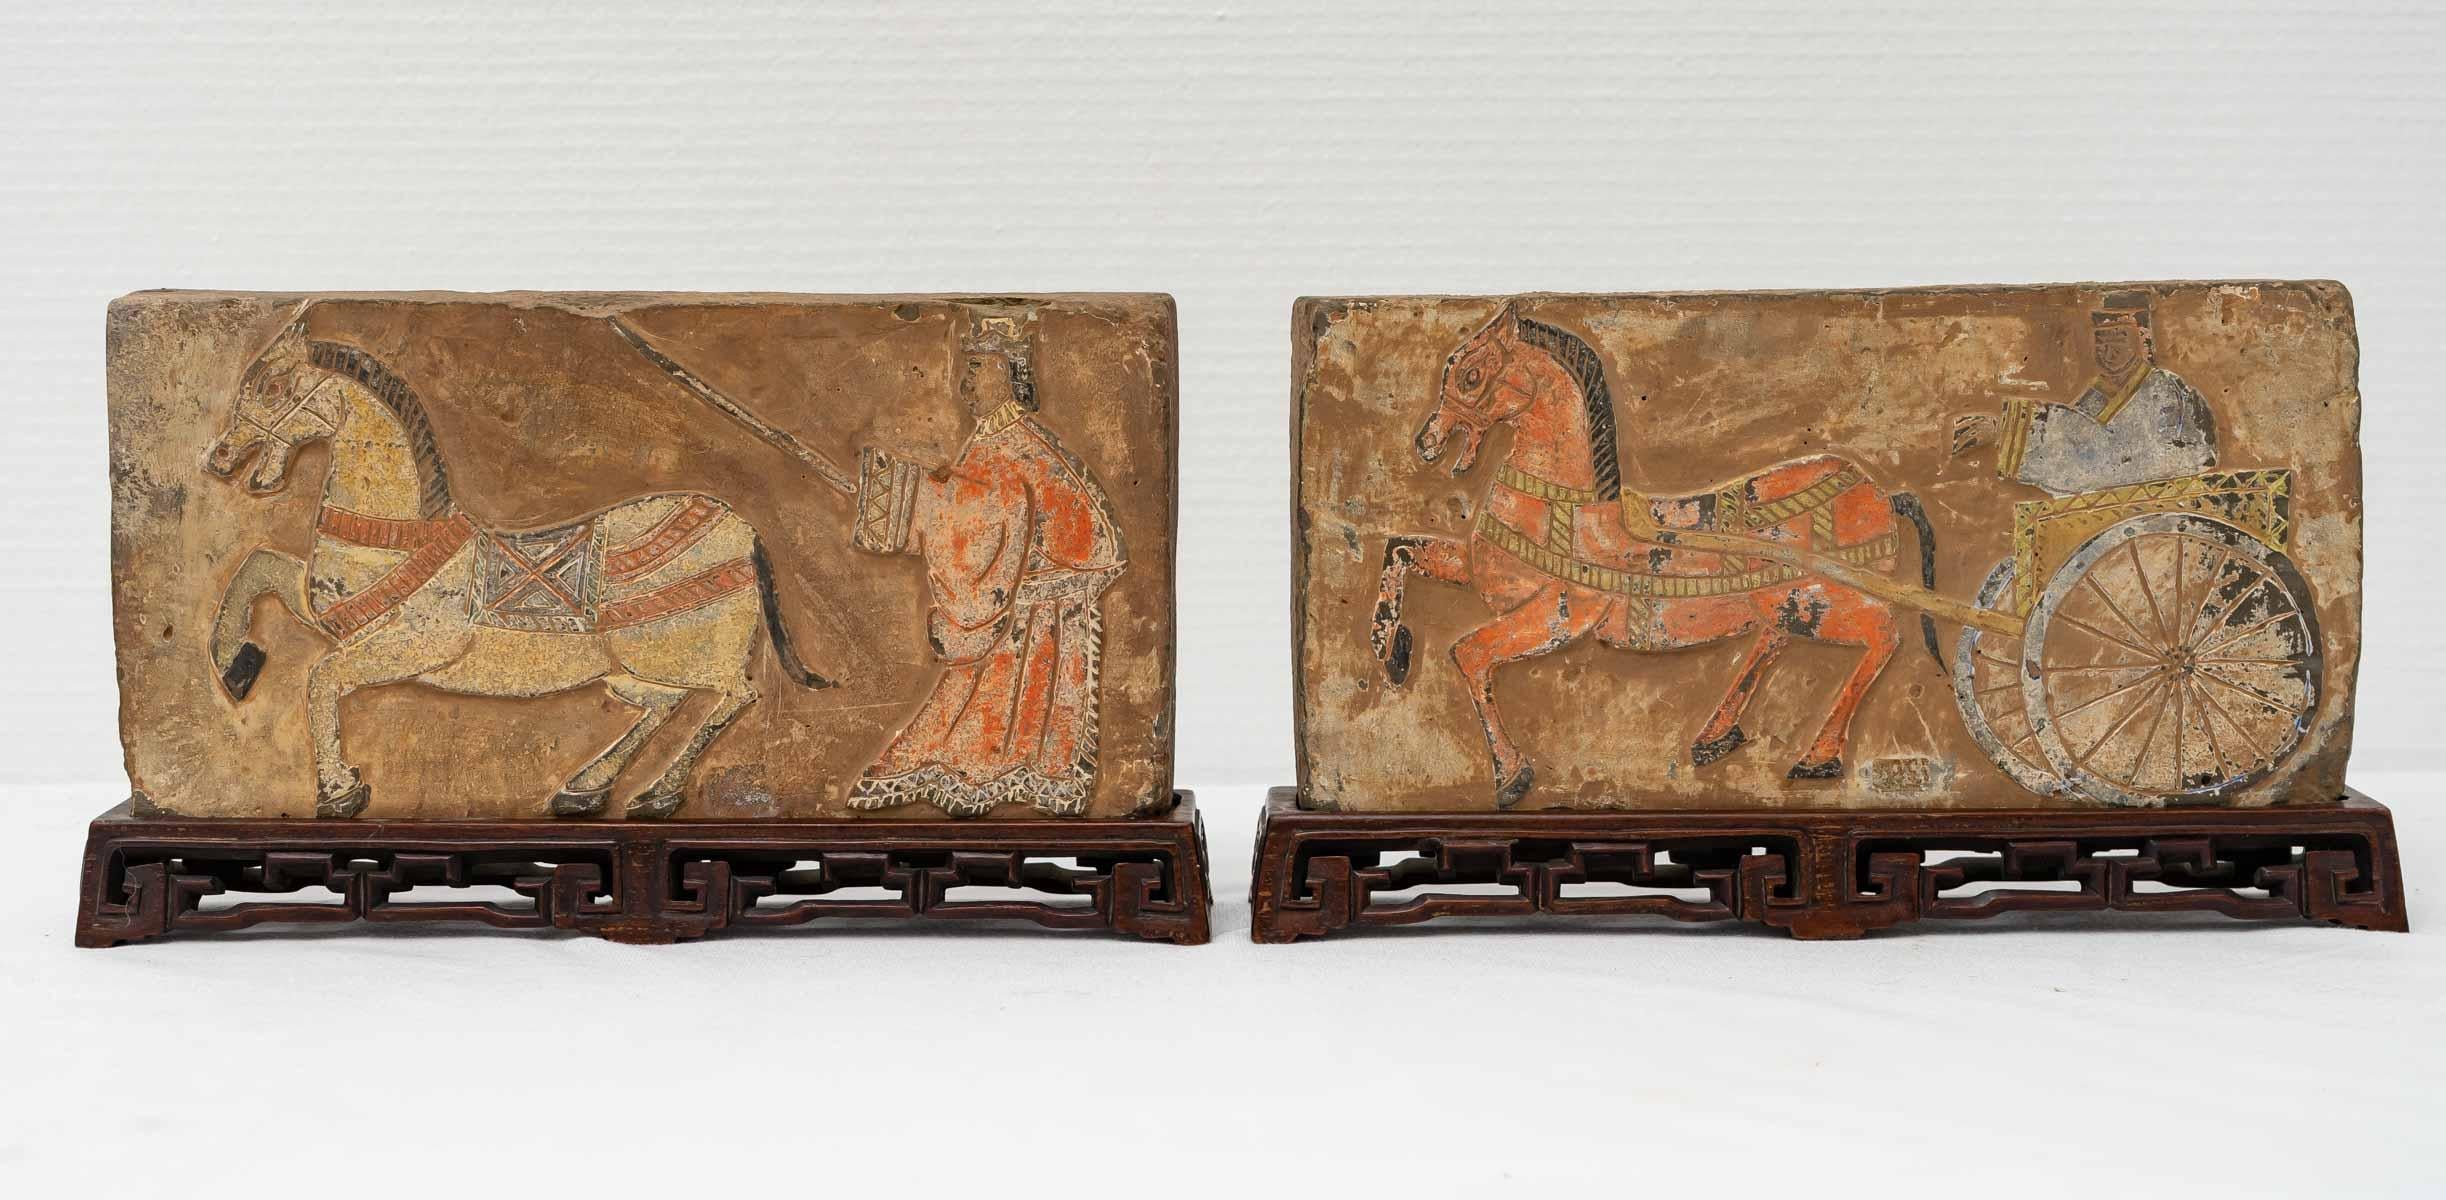 Paar Terrakotta-Ziegel mit Spuren von Polychromie, die zum einen eine Figur darstellen, die ihren von einem Pferd gezogenen Wagen fährt, und zum anderen eine Figur, die ihr Pferd trainiert.

Diese beiden Ziegel sind auf ihren ursprünglichen